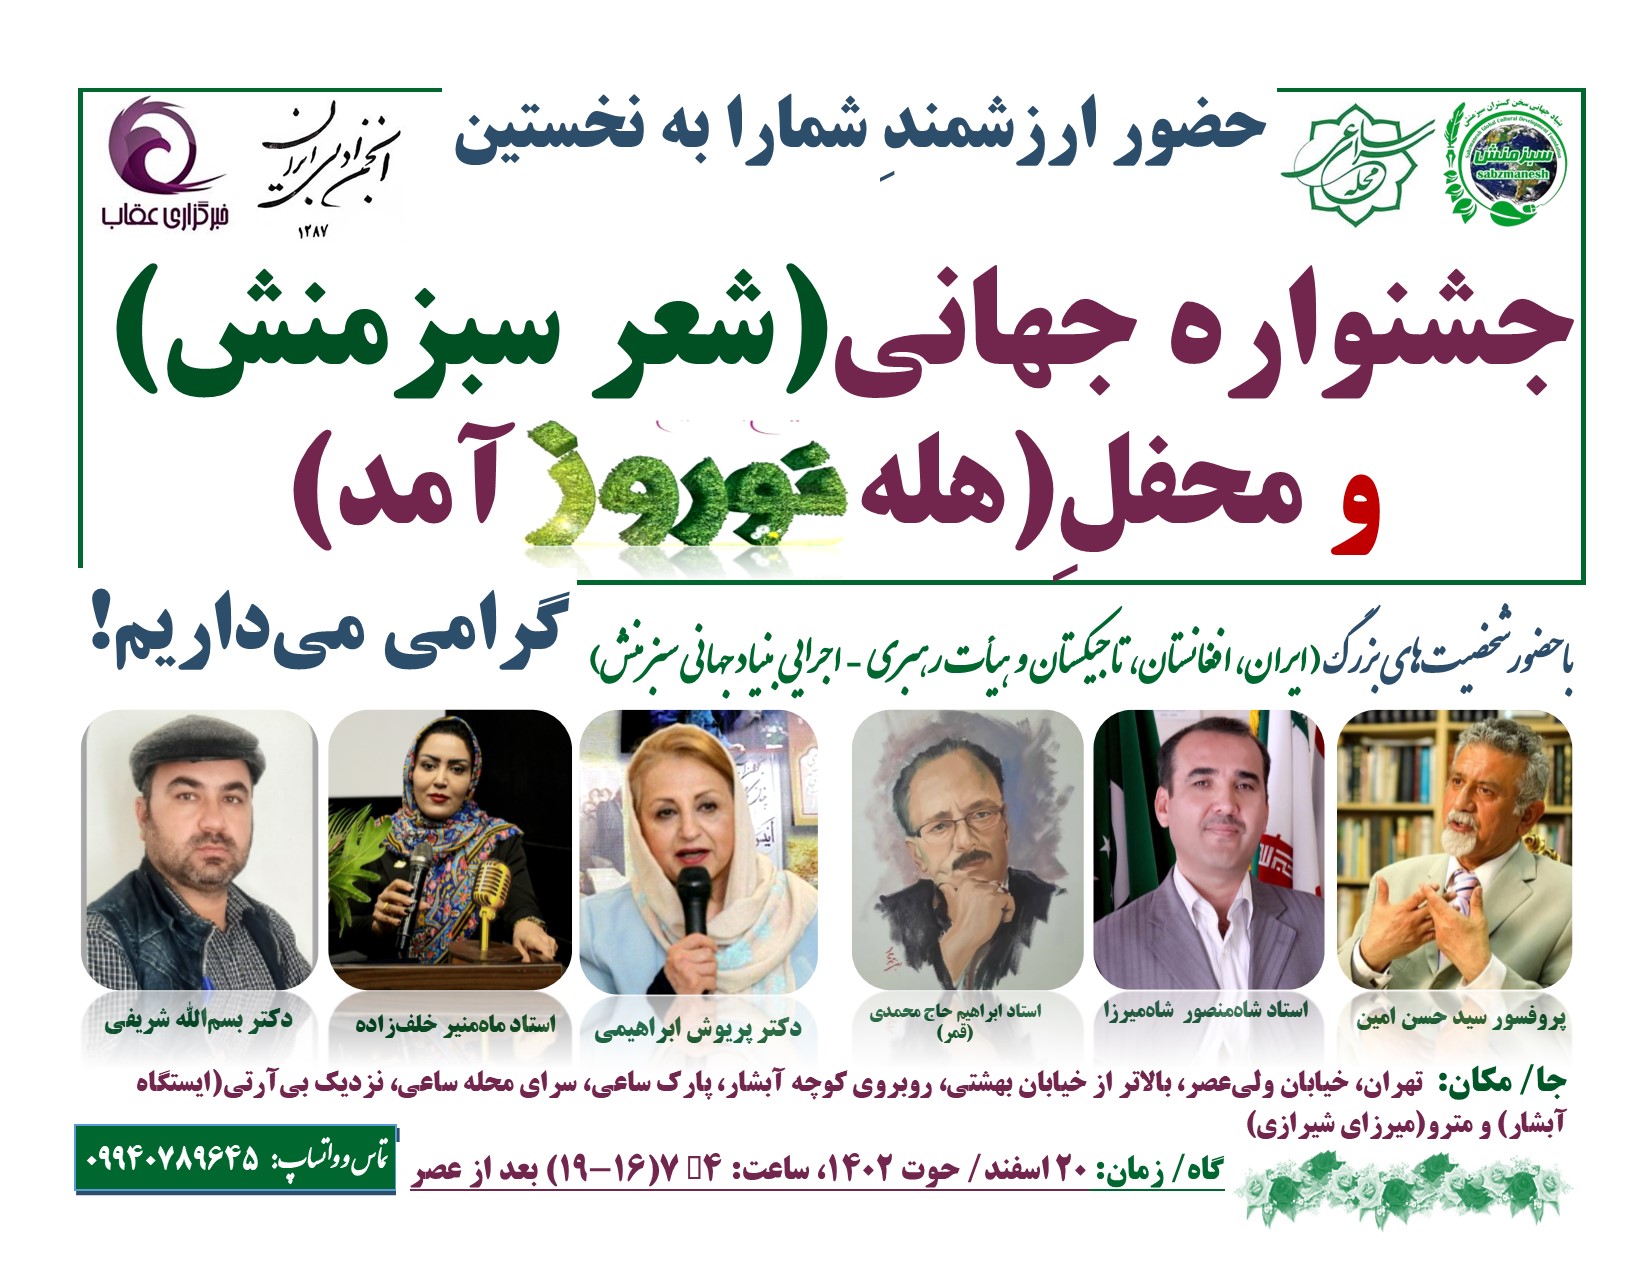 جشنواره جهانی شعر سبزمنش و برنامه(هله نوروزآمد) با برنامه‌های متنوع فرهنگی در تهران برگزار می‌گردد